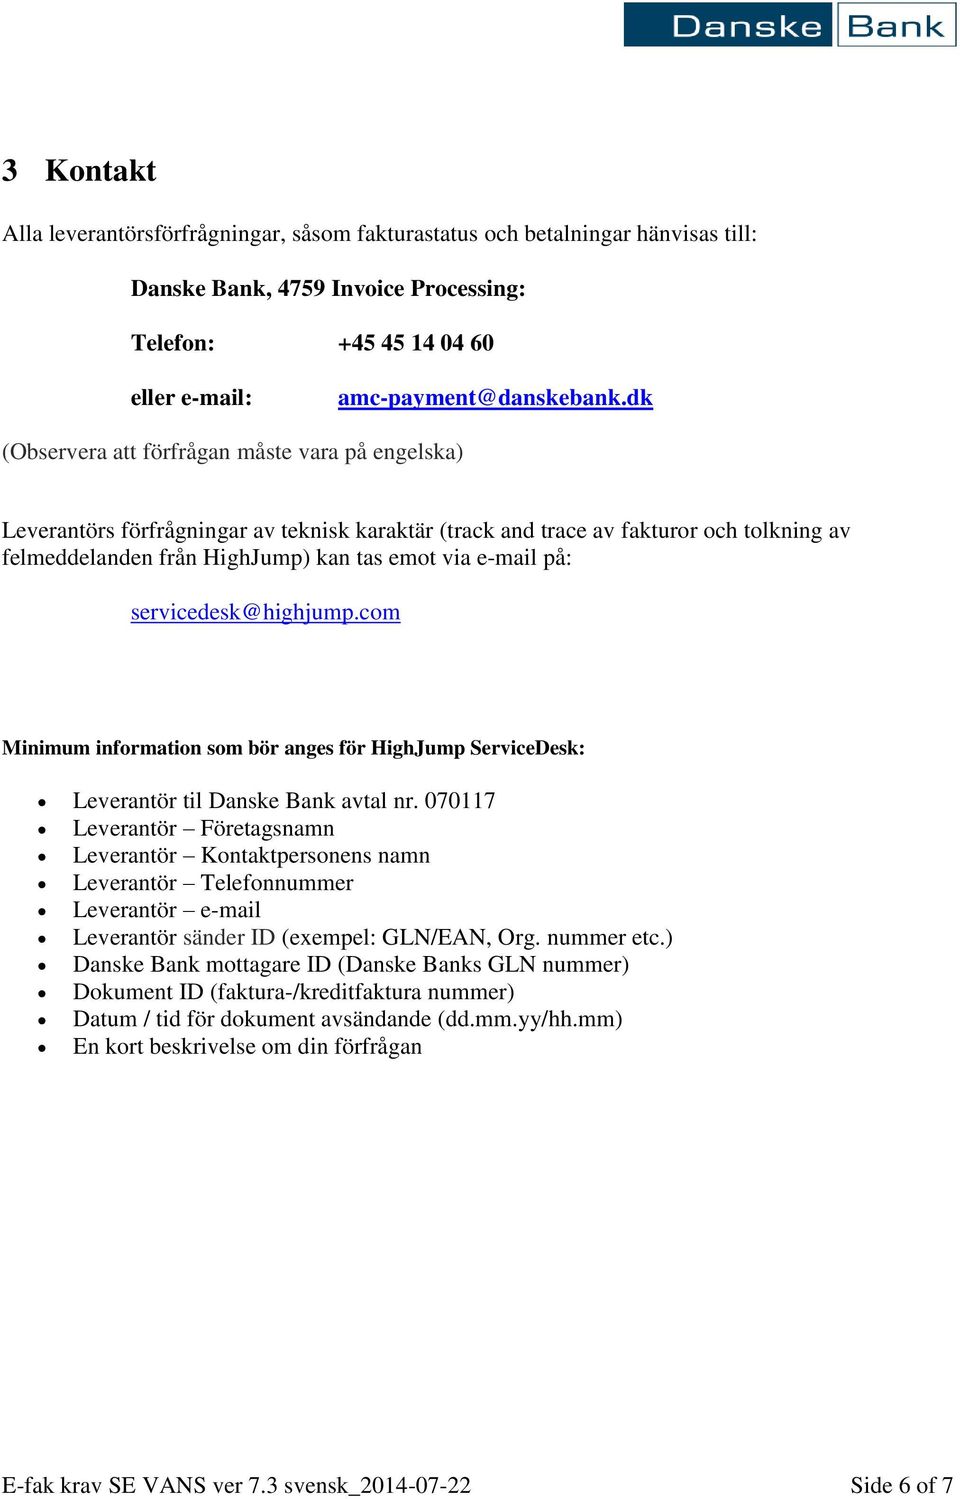 på: servicedesk@highjump.com Minimum information som bör anges för HighJump ServiceDesk: Leverantör til Danske Bank avtal nr.